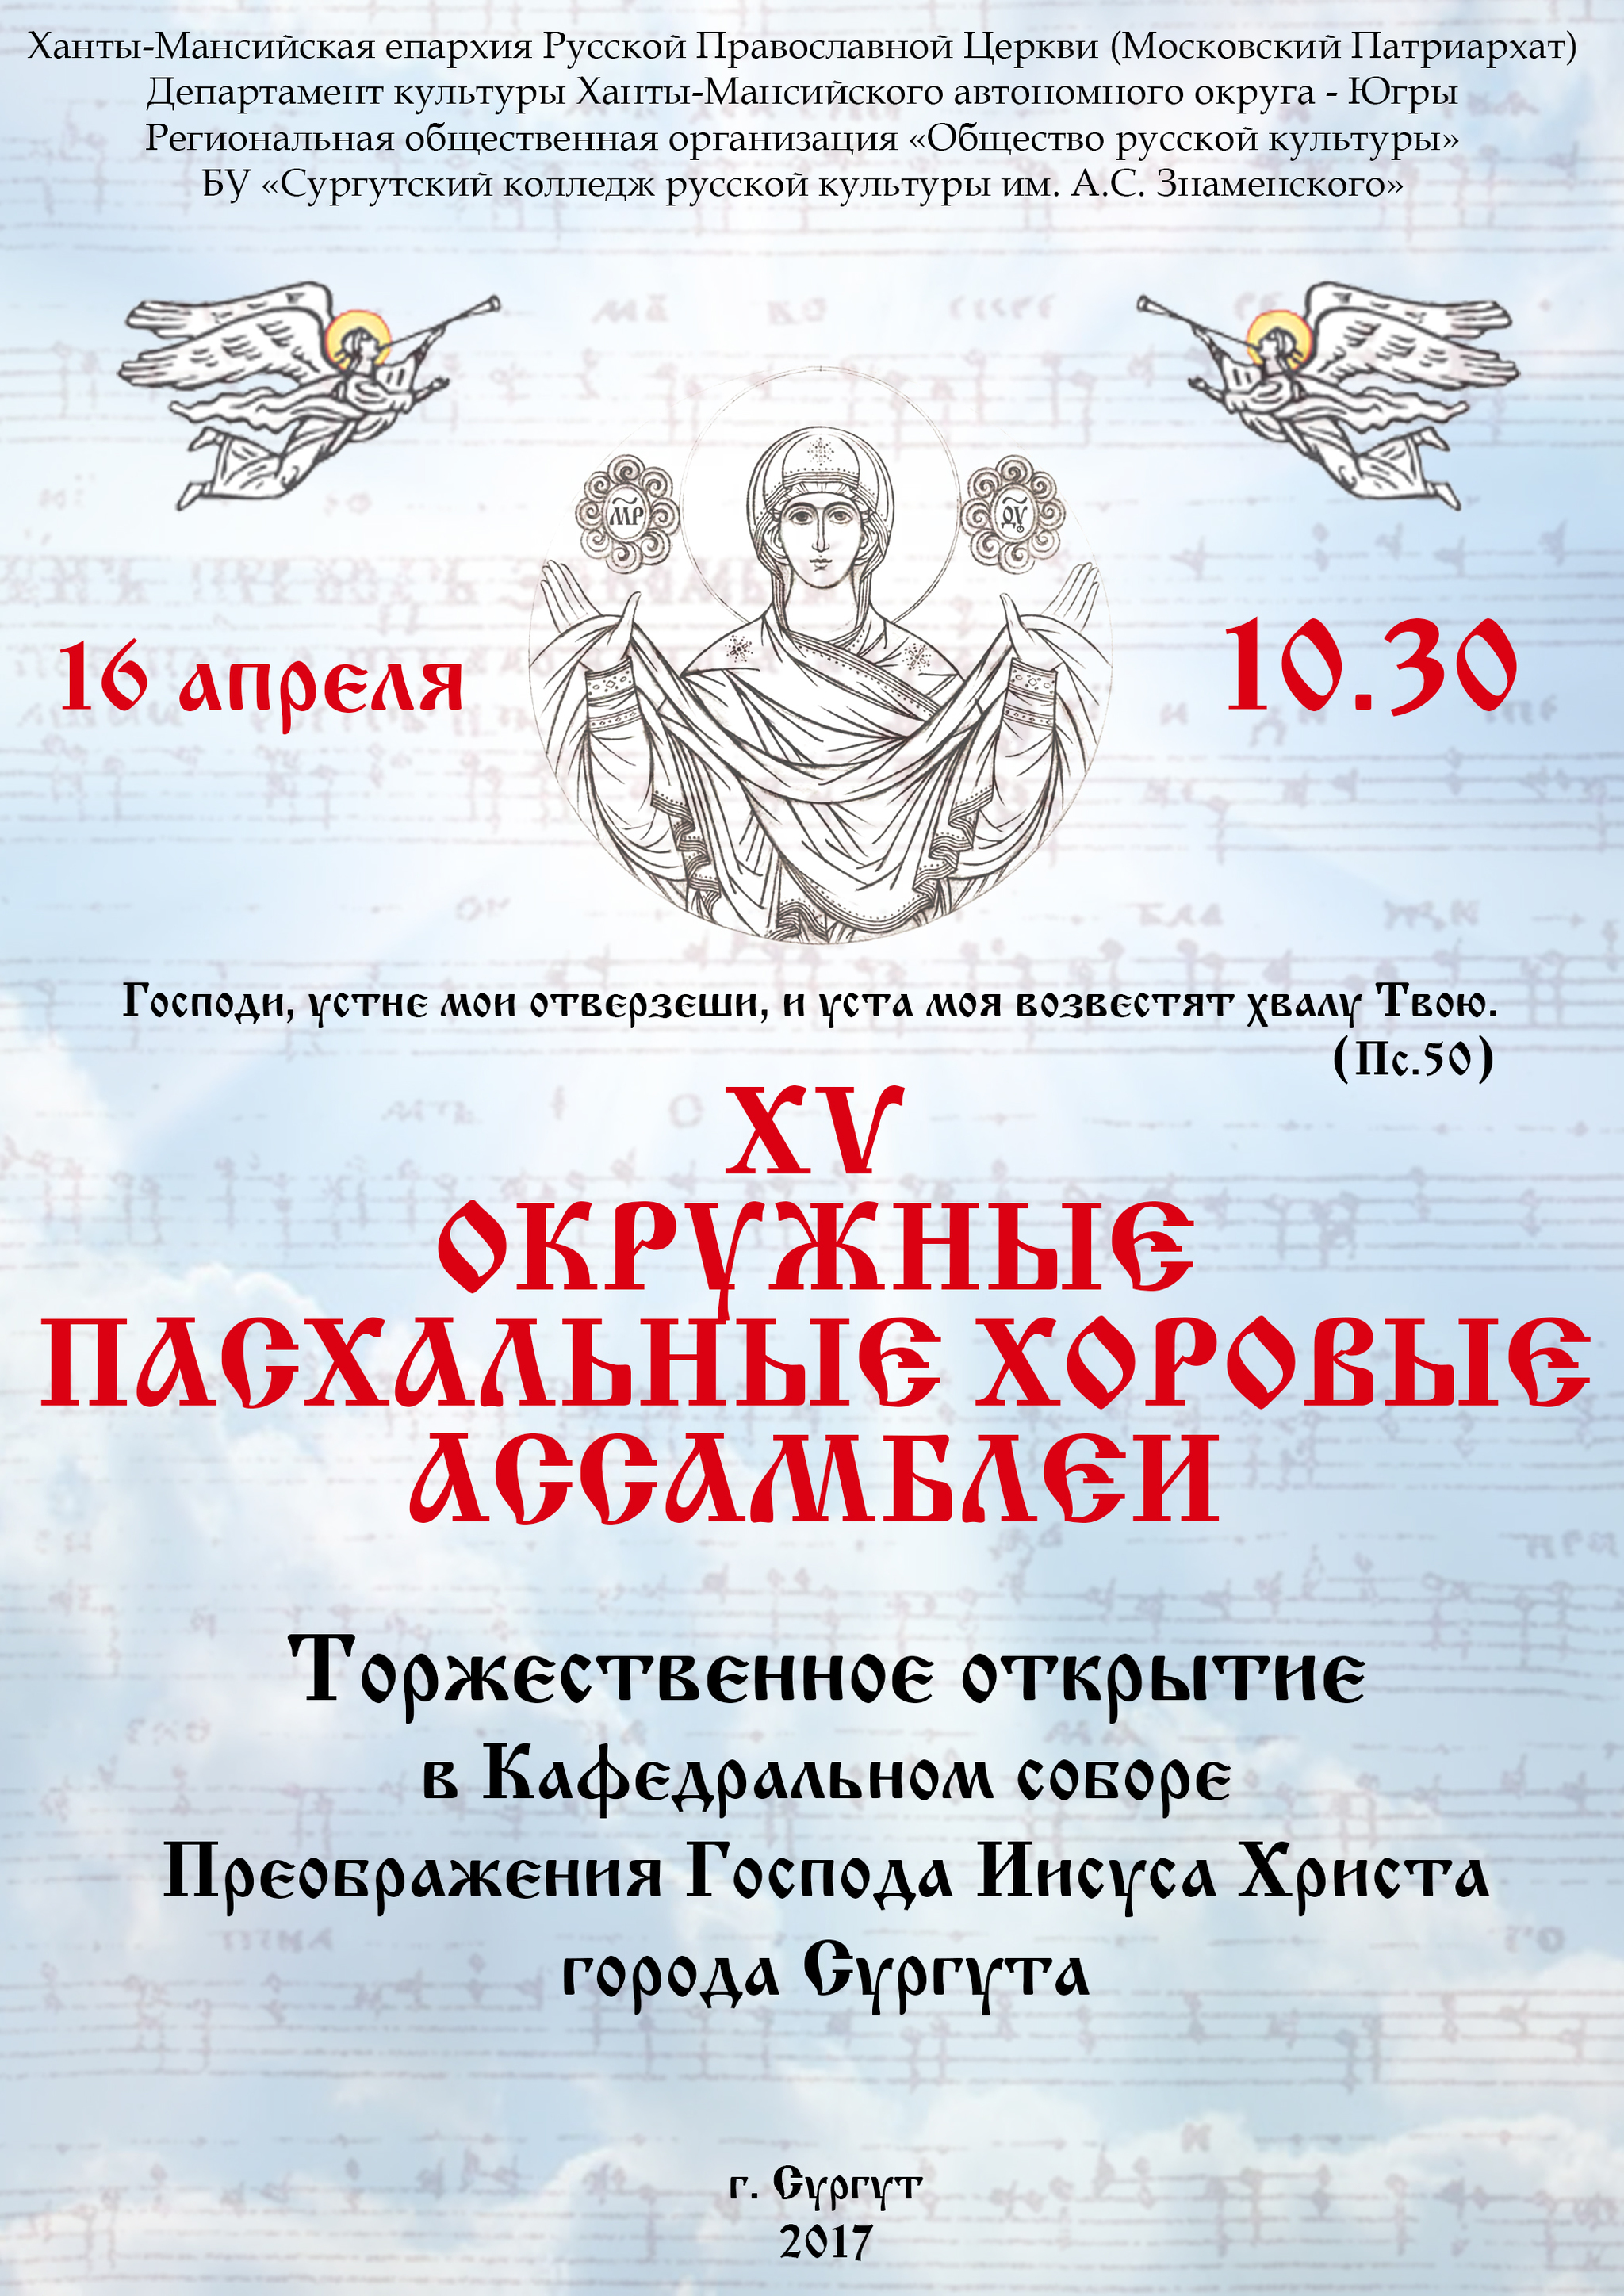 Сводный хор Югры выступит в Сургуте 